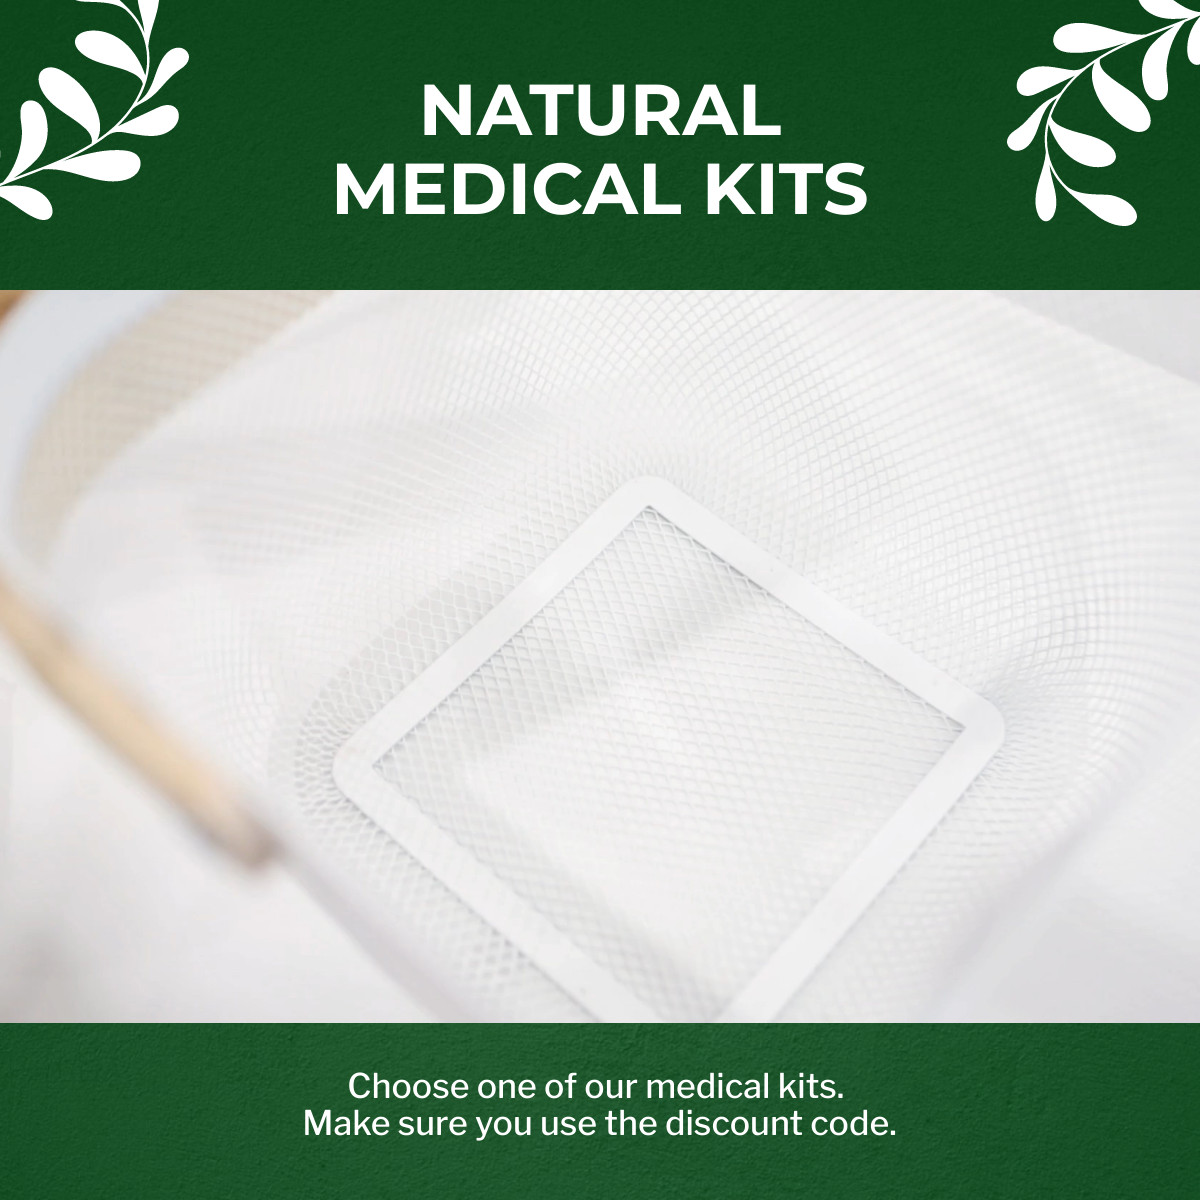 Natural Medical Kits Video